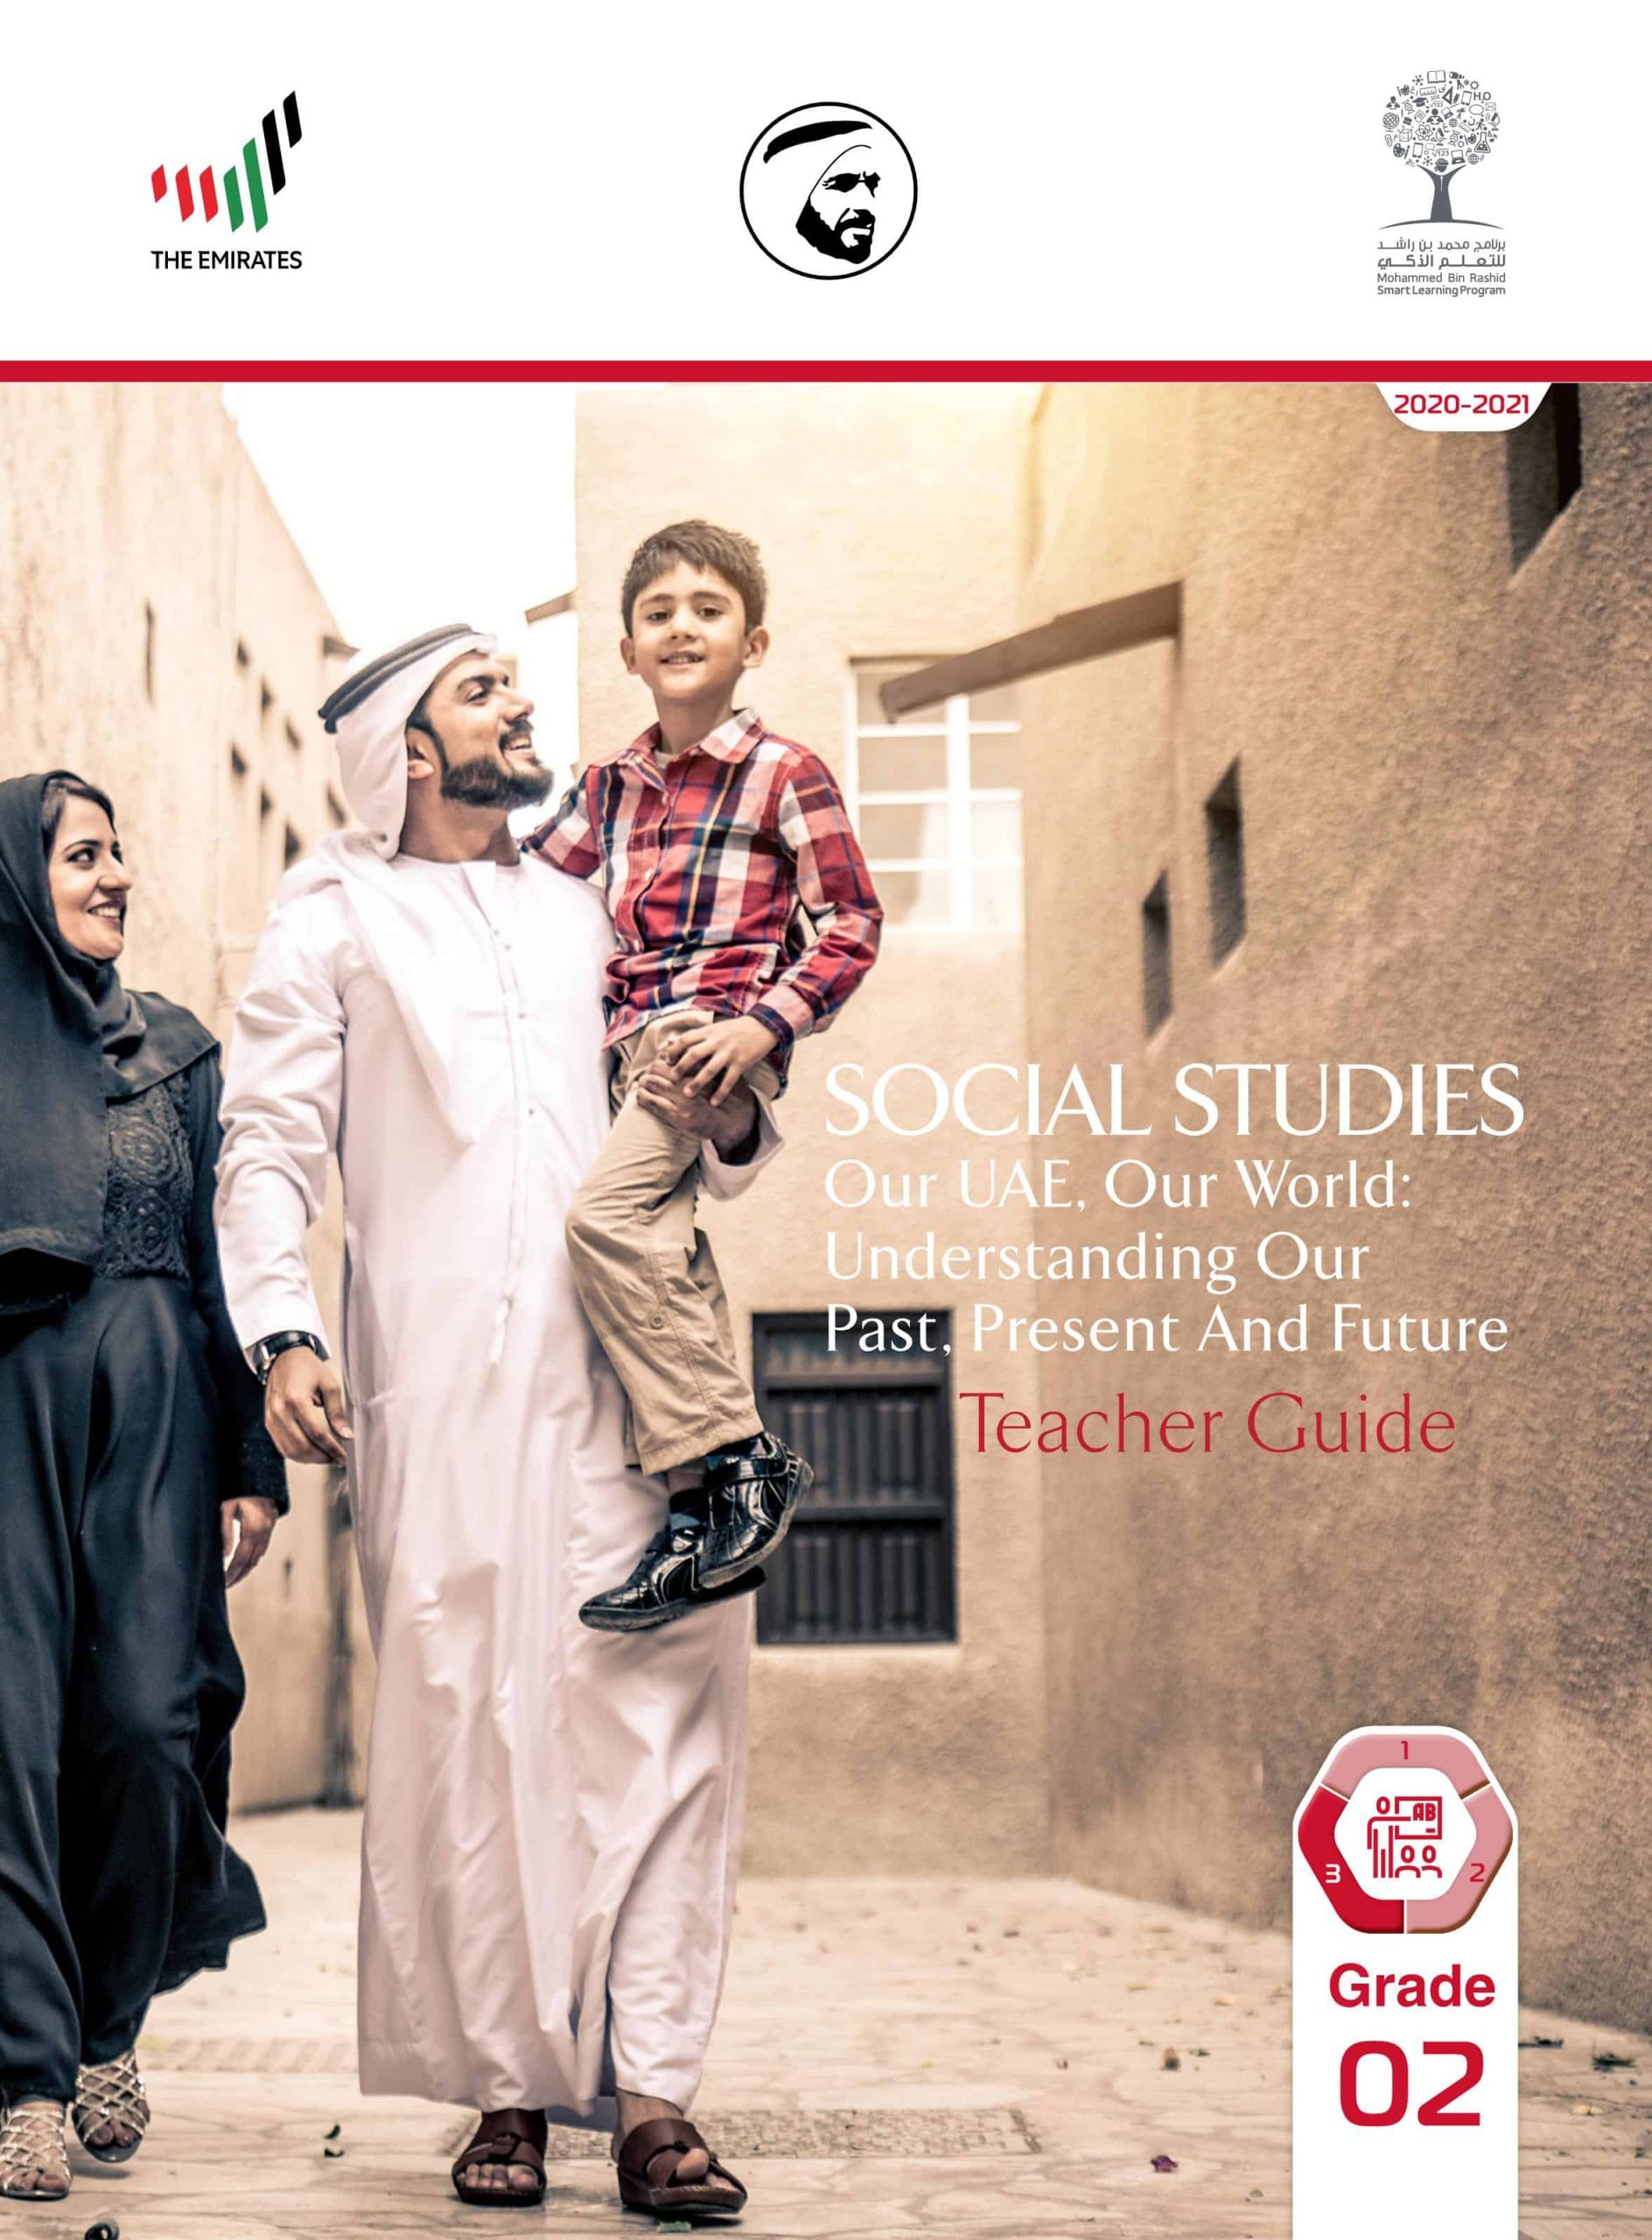 دليل المعلم بالإنجليزي الفصل الدراسي الثالث 2020-2021 الصف الثاني مادة الدراسات الإجتماعية والتربية الوطنية